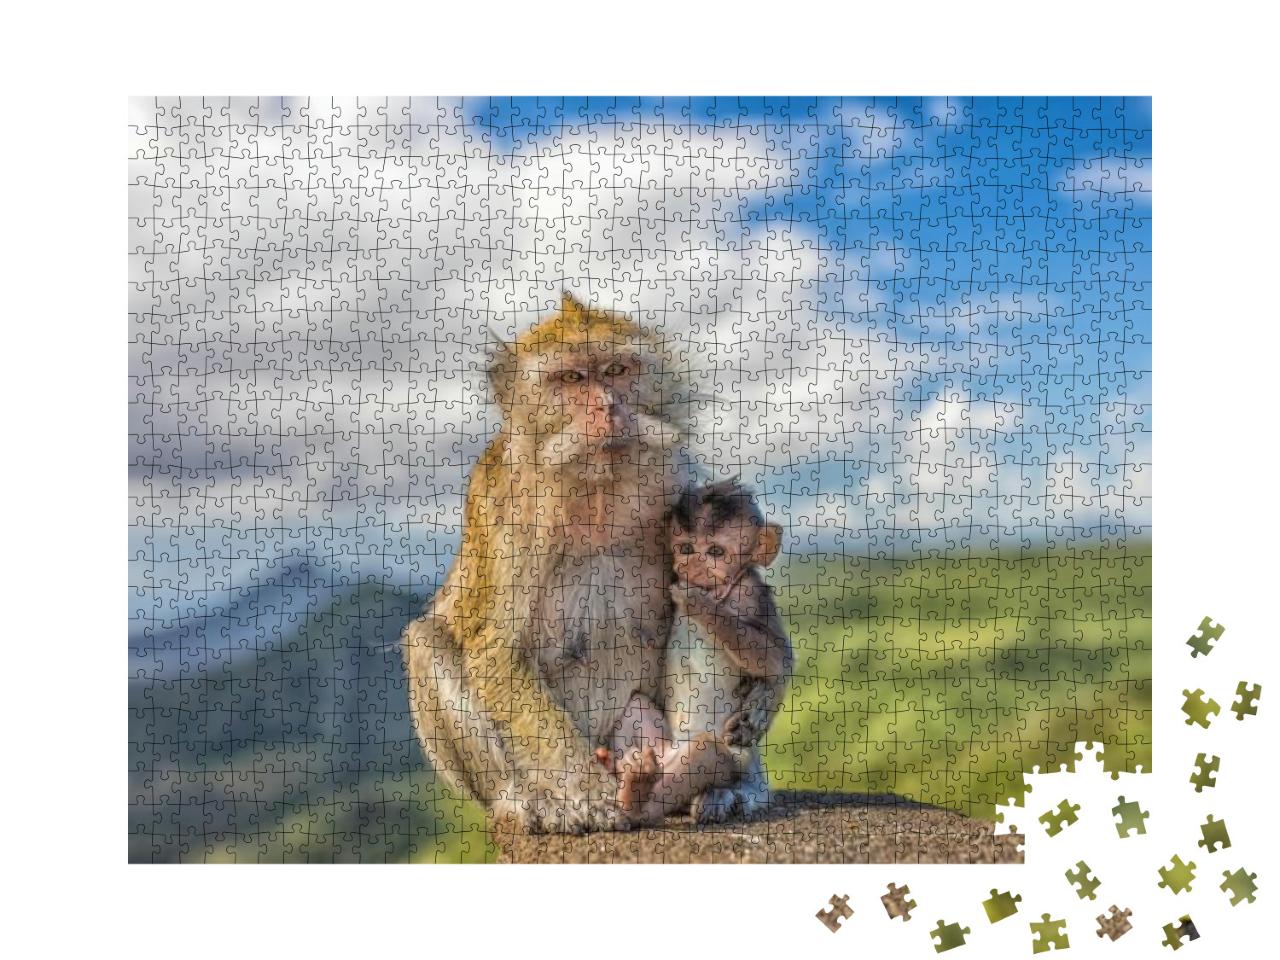 Puzzle 1000 Teile „Niedliches Makakenäffchen mit Affenmutter, Mauritius“